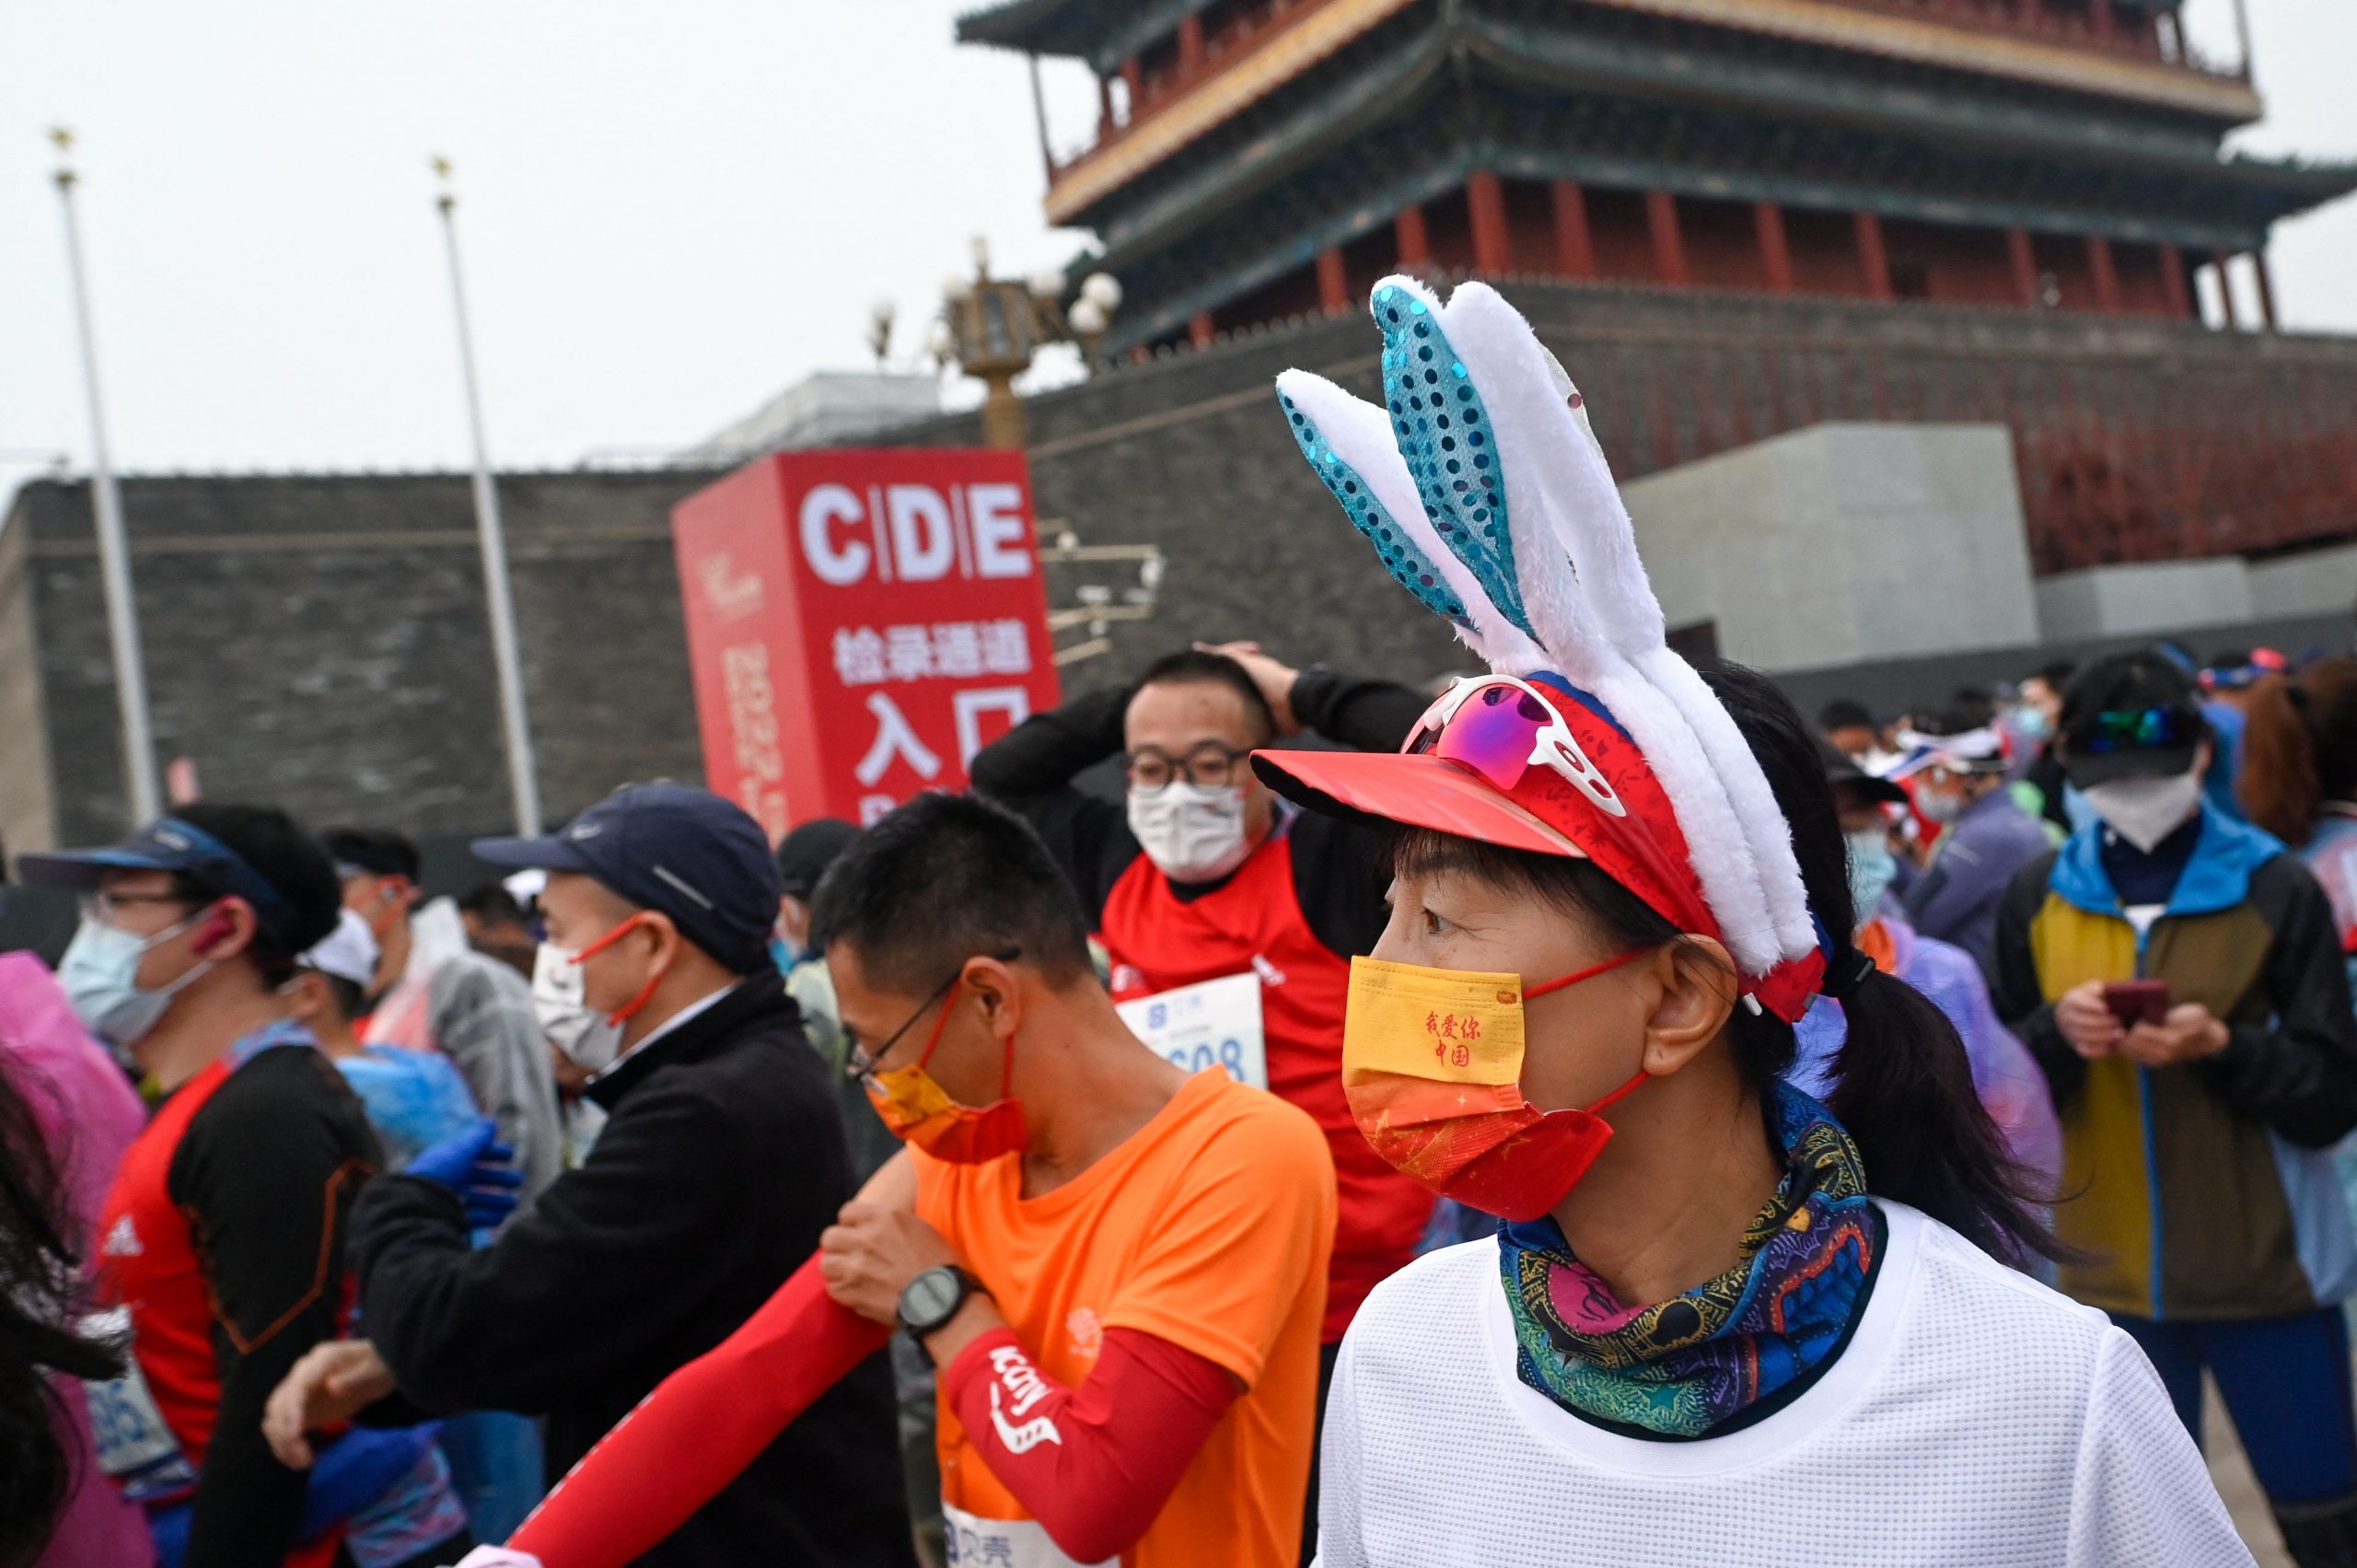 北京马拉松疫情下开跑 民众正反意见两极 